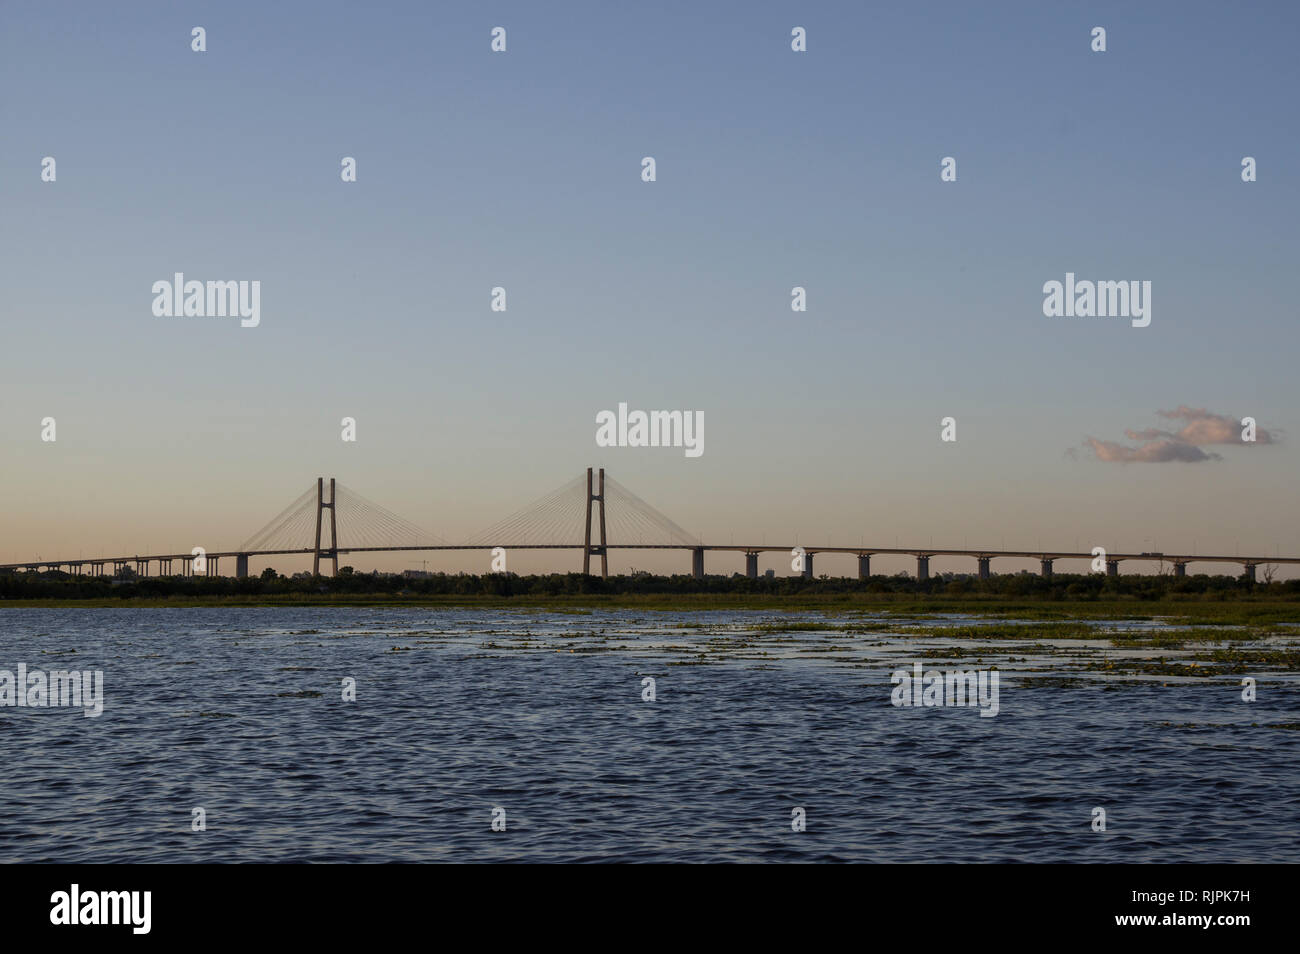 Puente Rosario-Victoria, el Puente Rosario-Victoria, cruza el río Paraná entre las ciudades argentinas de Rosario y Entre Ríos Foto de stock